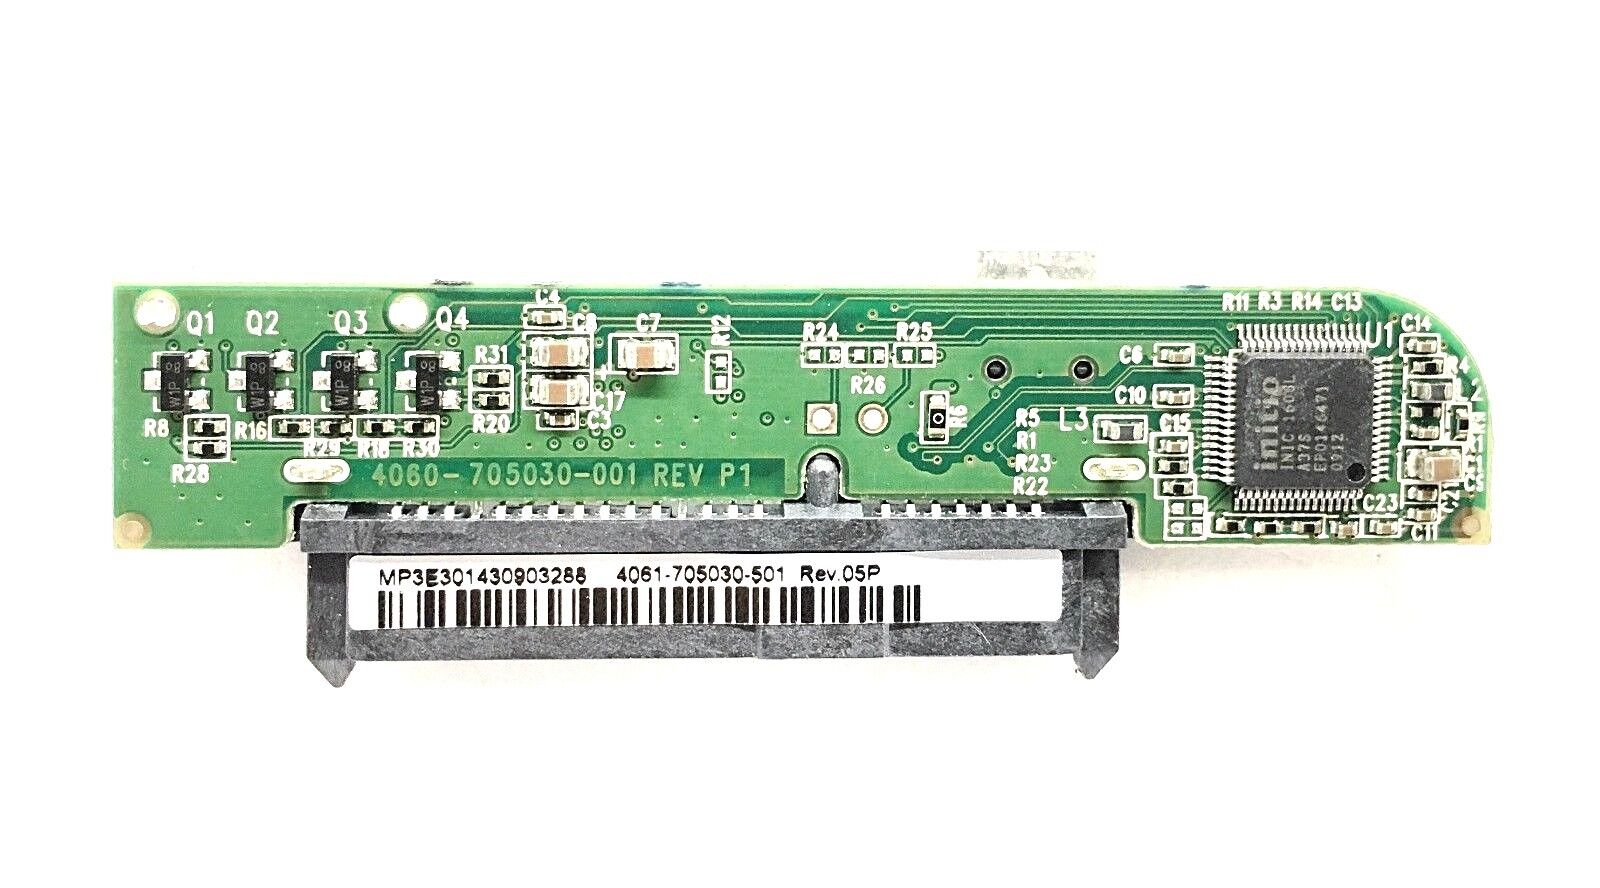 WD PCB Controller Board 4061-705030-501 Rev 05P 4060-705030-001 Rev P1 USB 2.0 